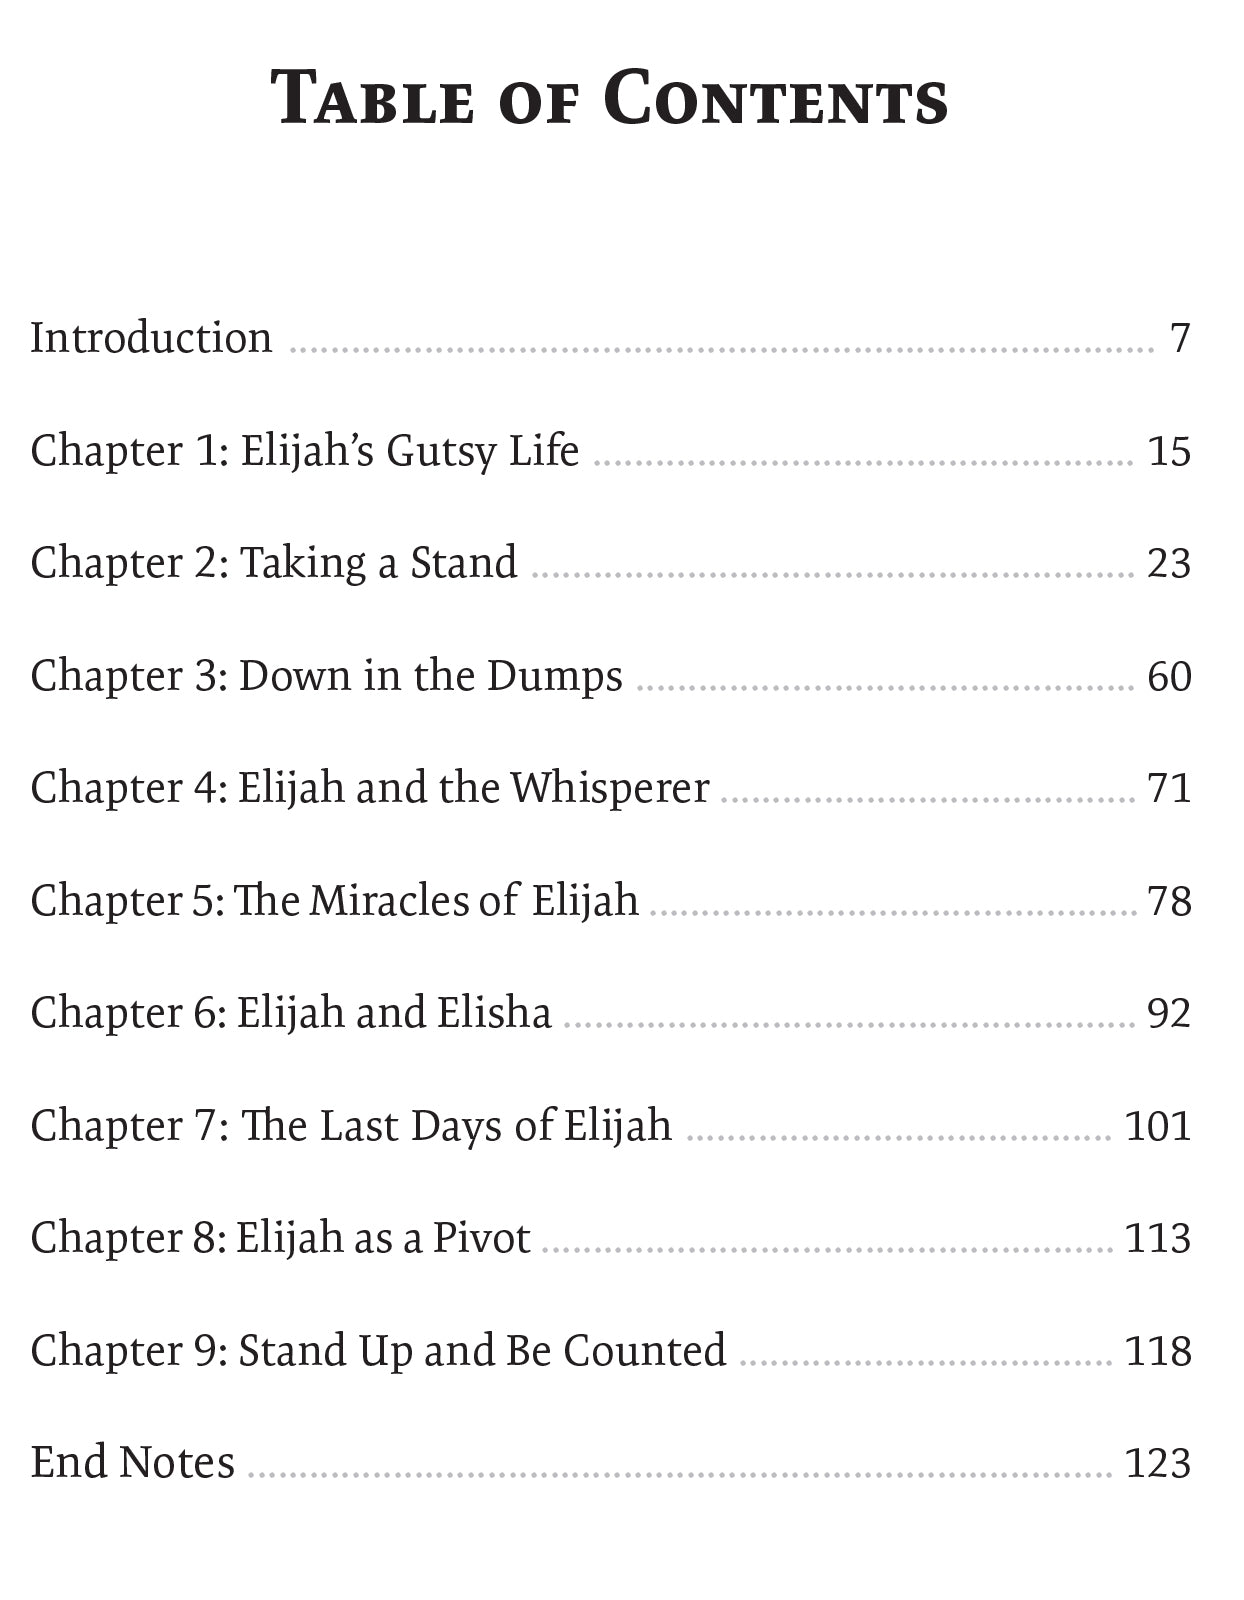 The Radical Life of Elijah - Illumination Publishers